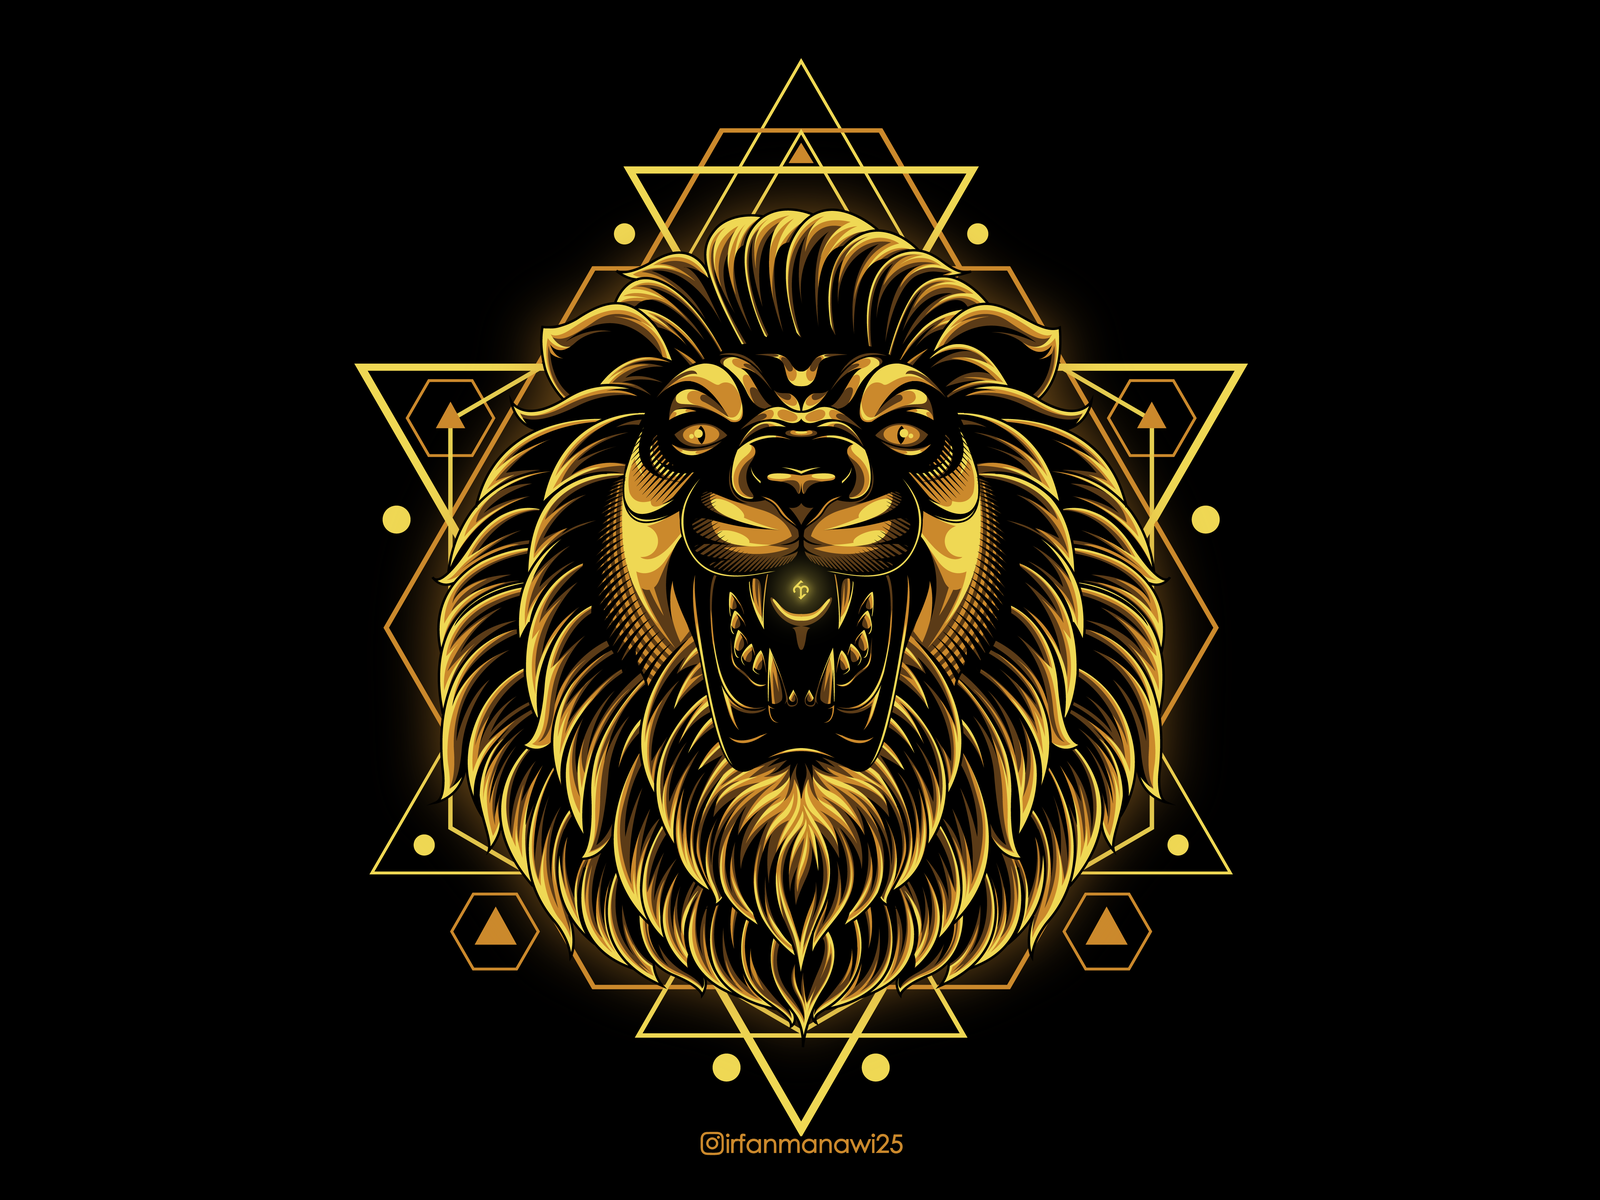 Golden Lion King Scared Geometry by Irfan Mahmud on Dribbble